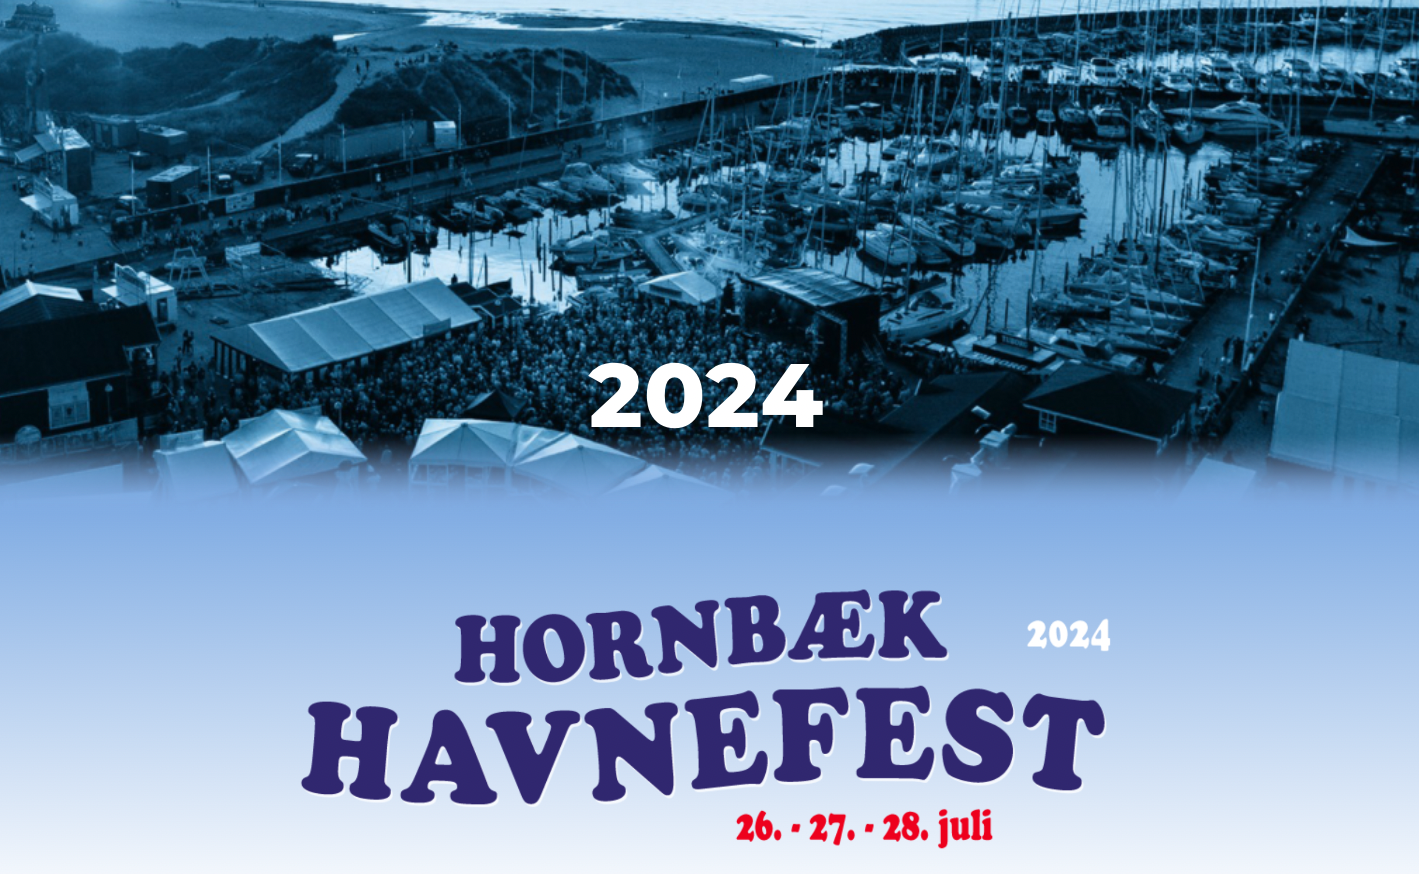 Hornbæk Havnefest 2024